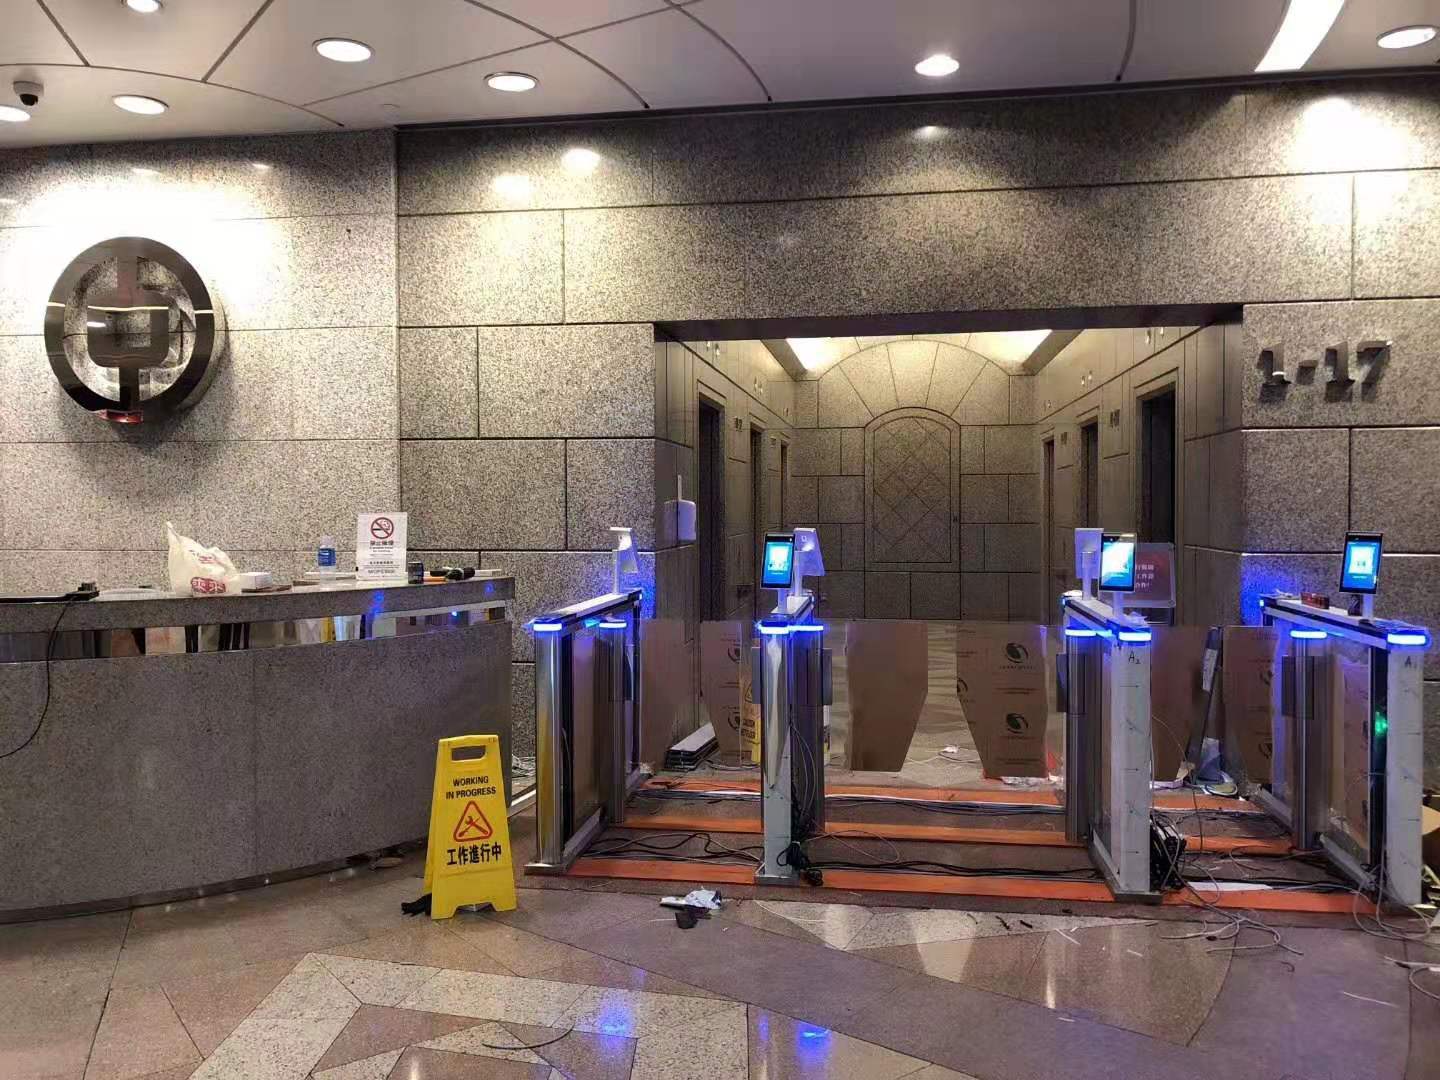 kontrol akses wajah biometrik android diimplementasikan di bank aula cabang cina